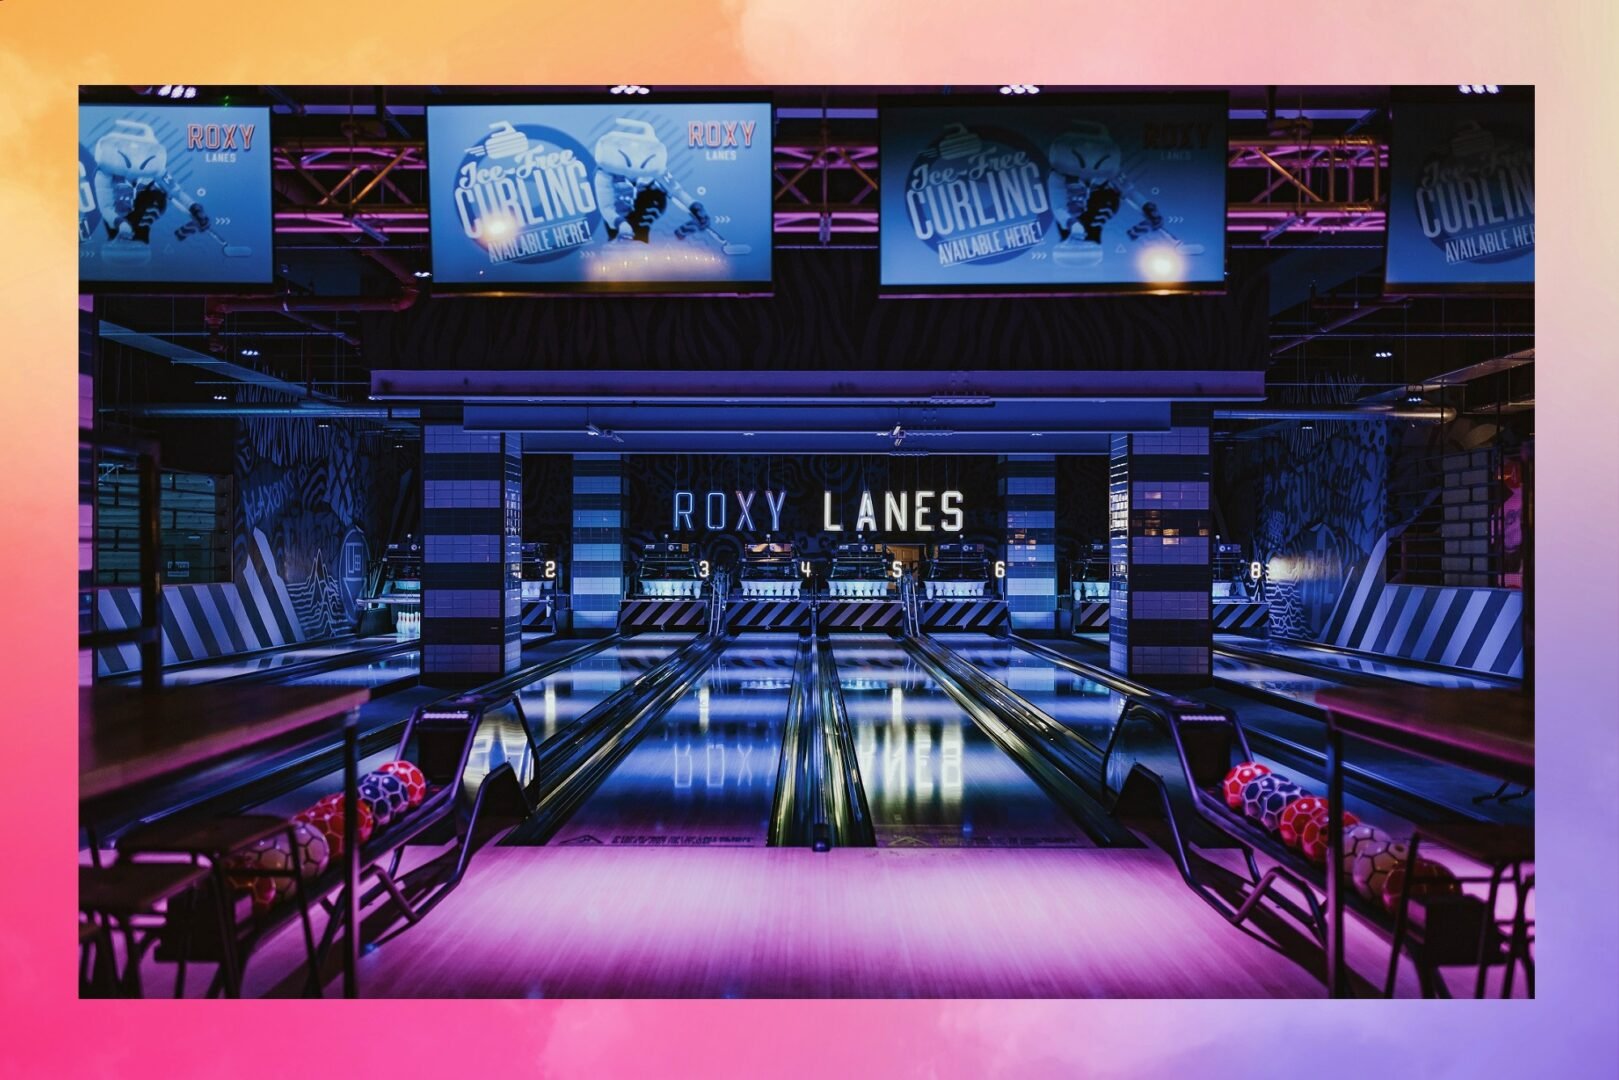 Roxy lanes Bowling Lane